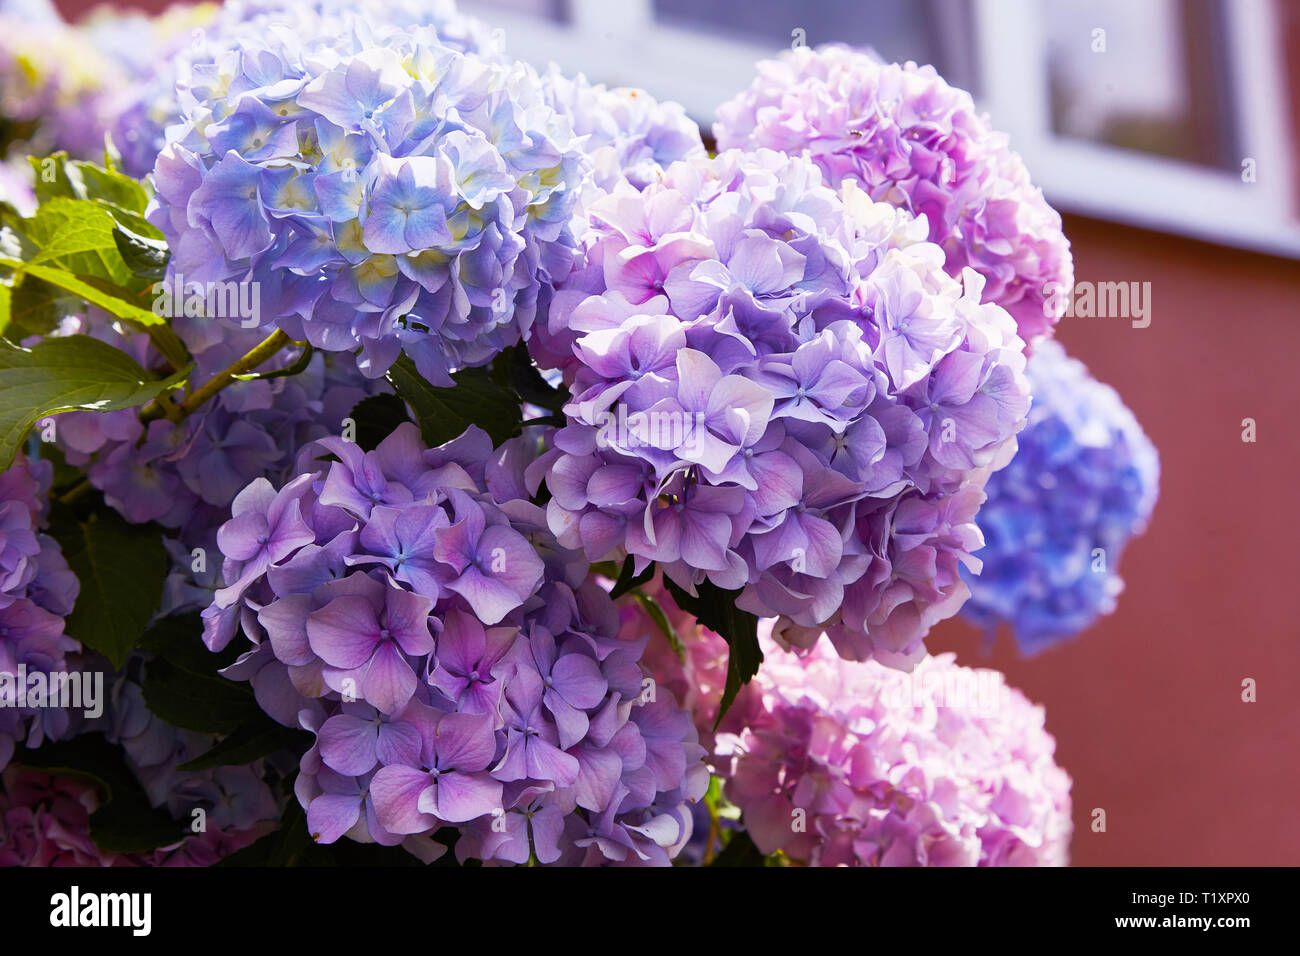 Rose, bleu, mauve, violet, violet fleur Hortensia (Hydrangea macrophylla)  qui fleurit au printemps et en été dans un jardin. L'Hydrangea macrophylla  Photo Stock - Alamy